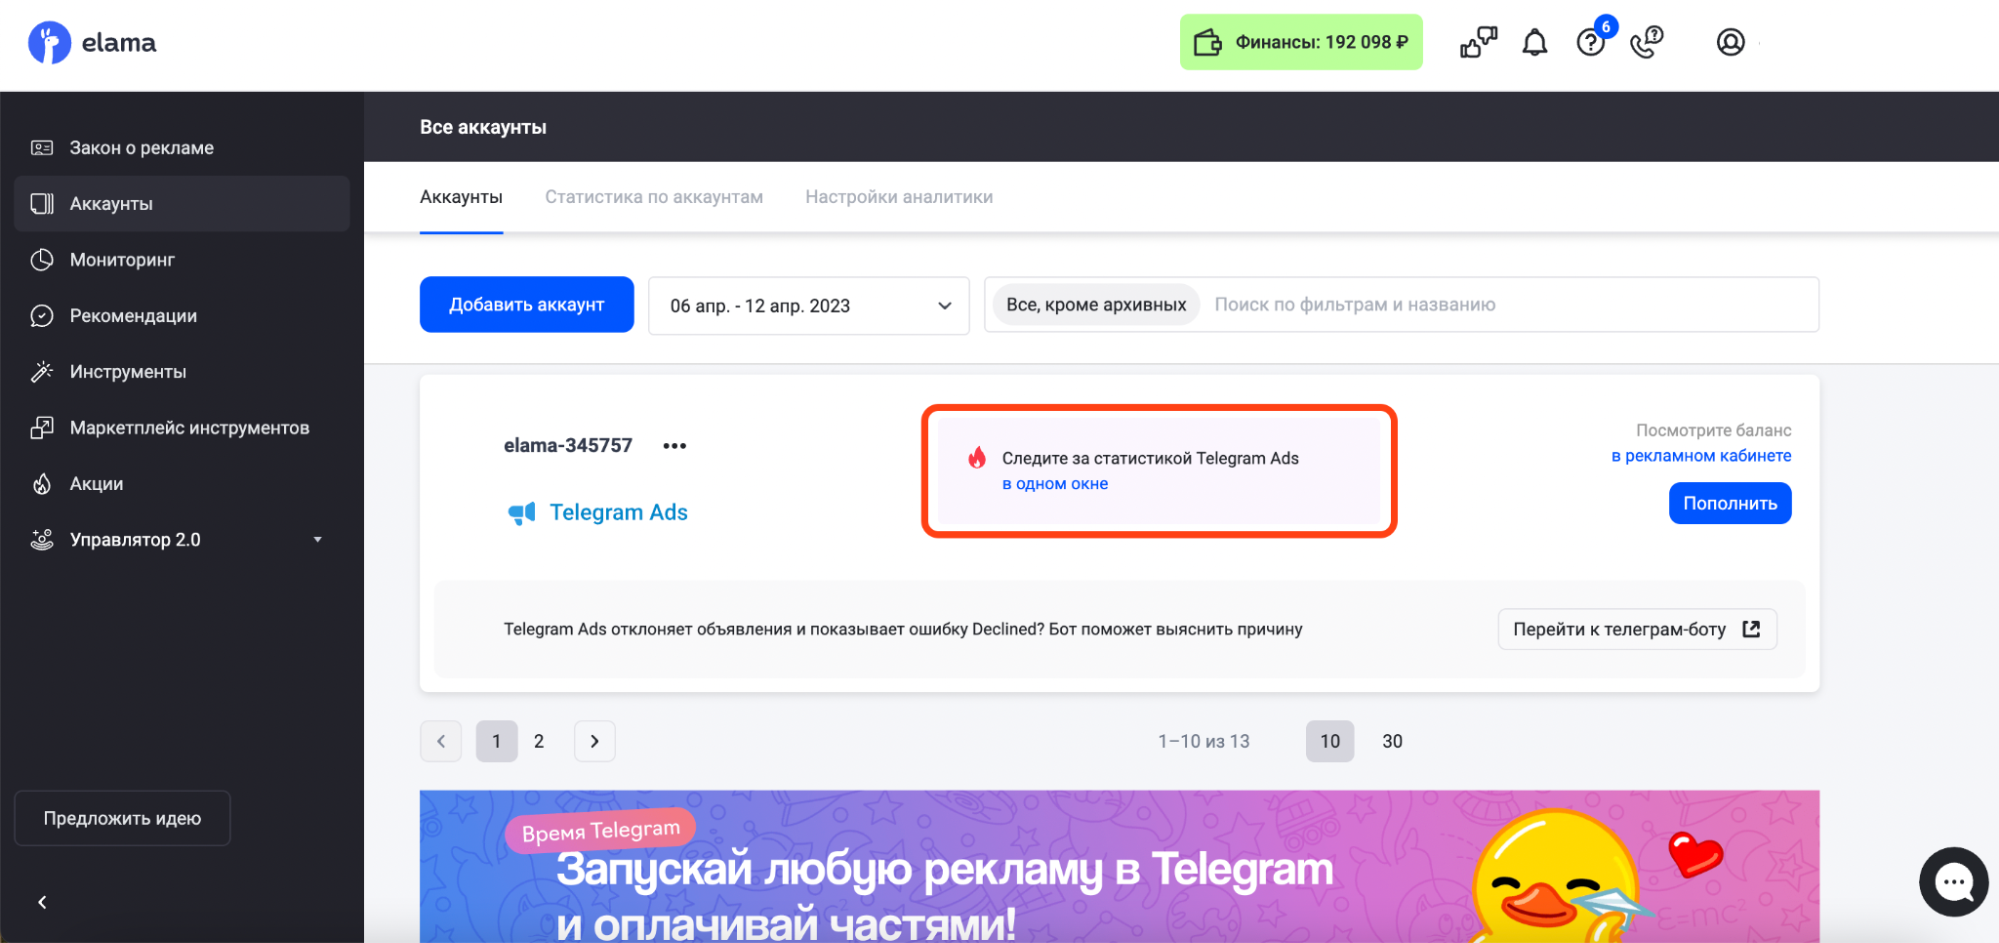 Бесплатные номера для регистрации в телеграмме россии онлайн бесплатно фото 107